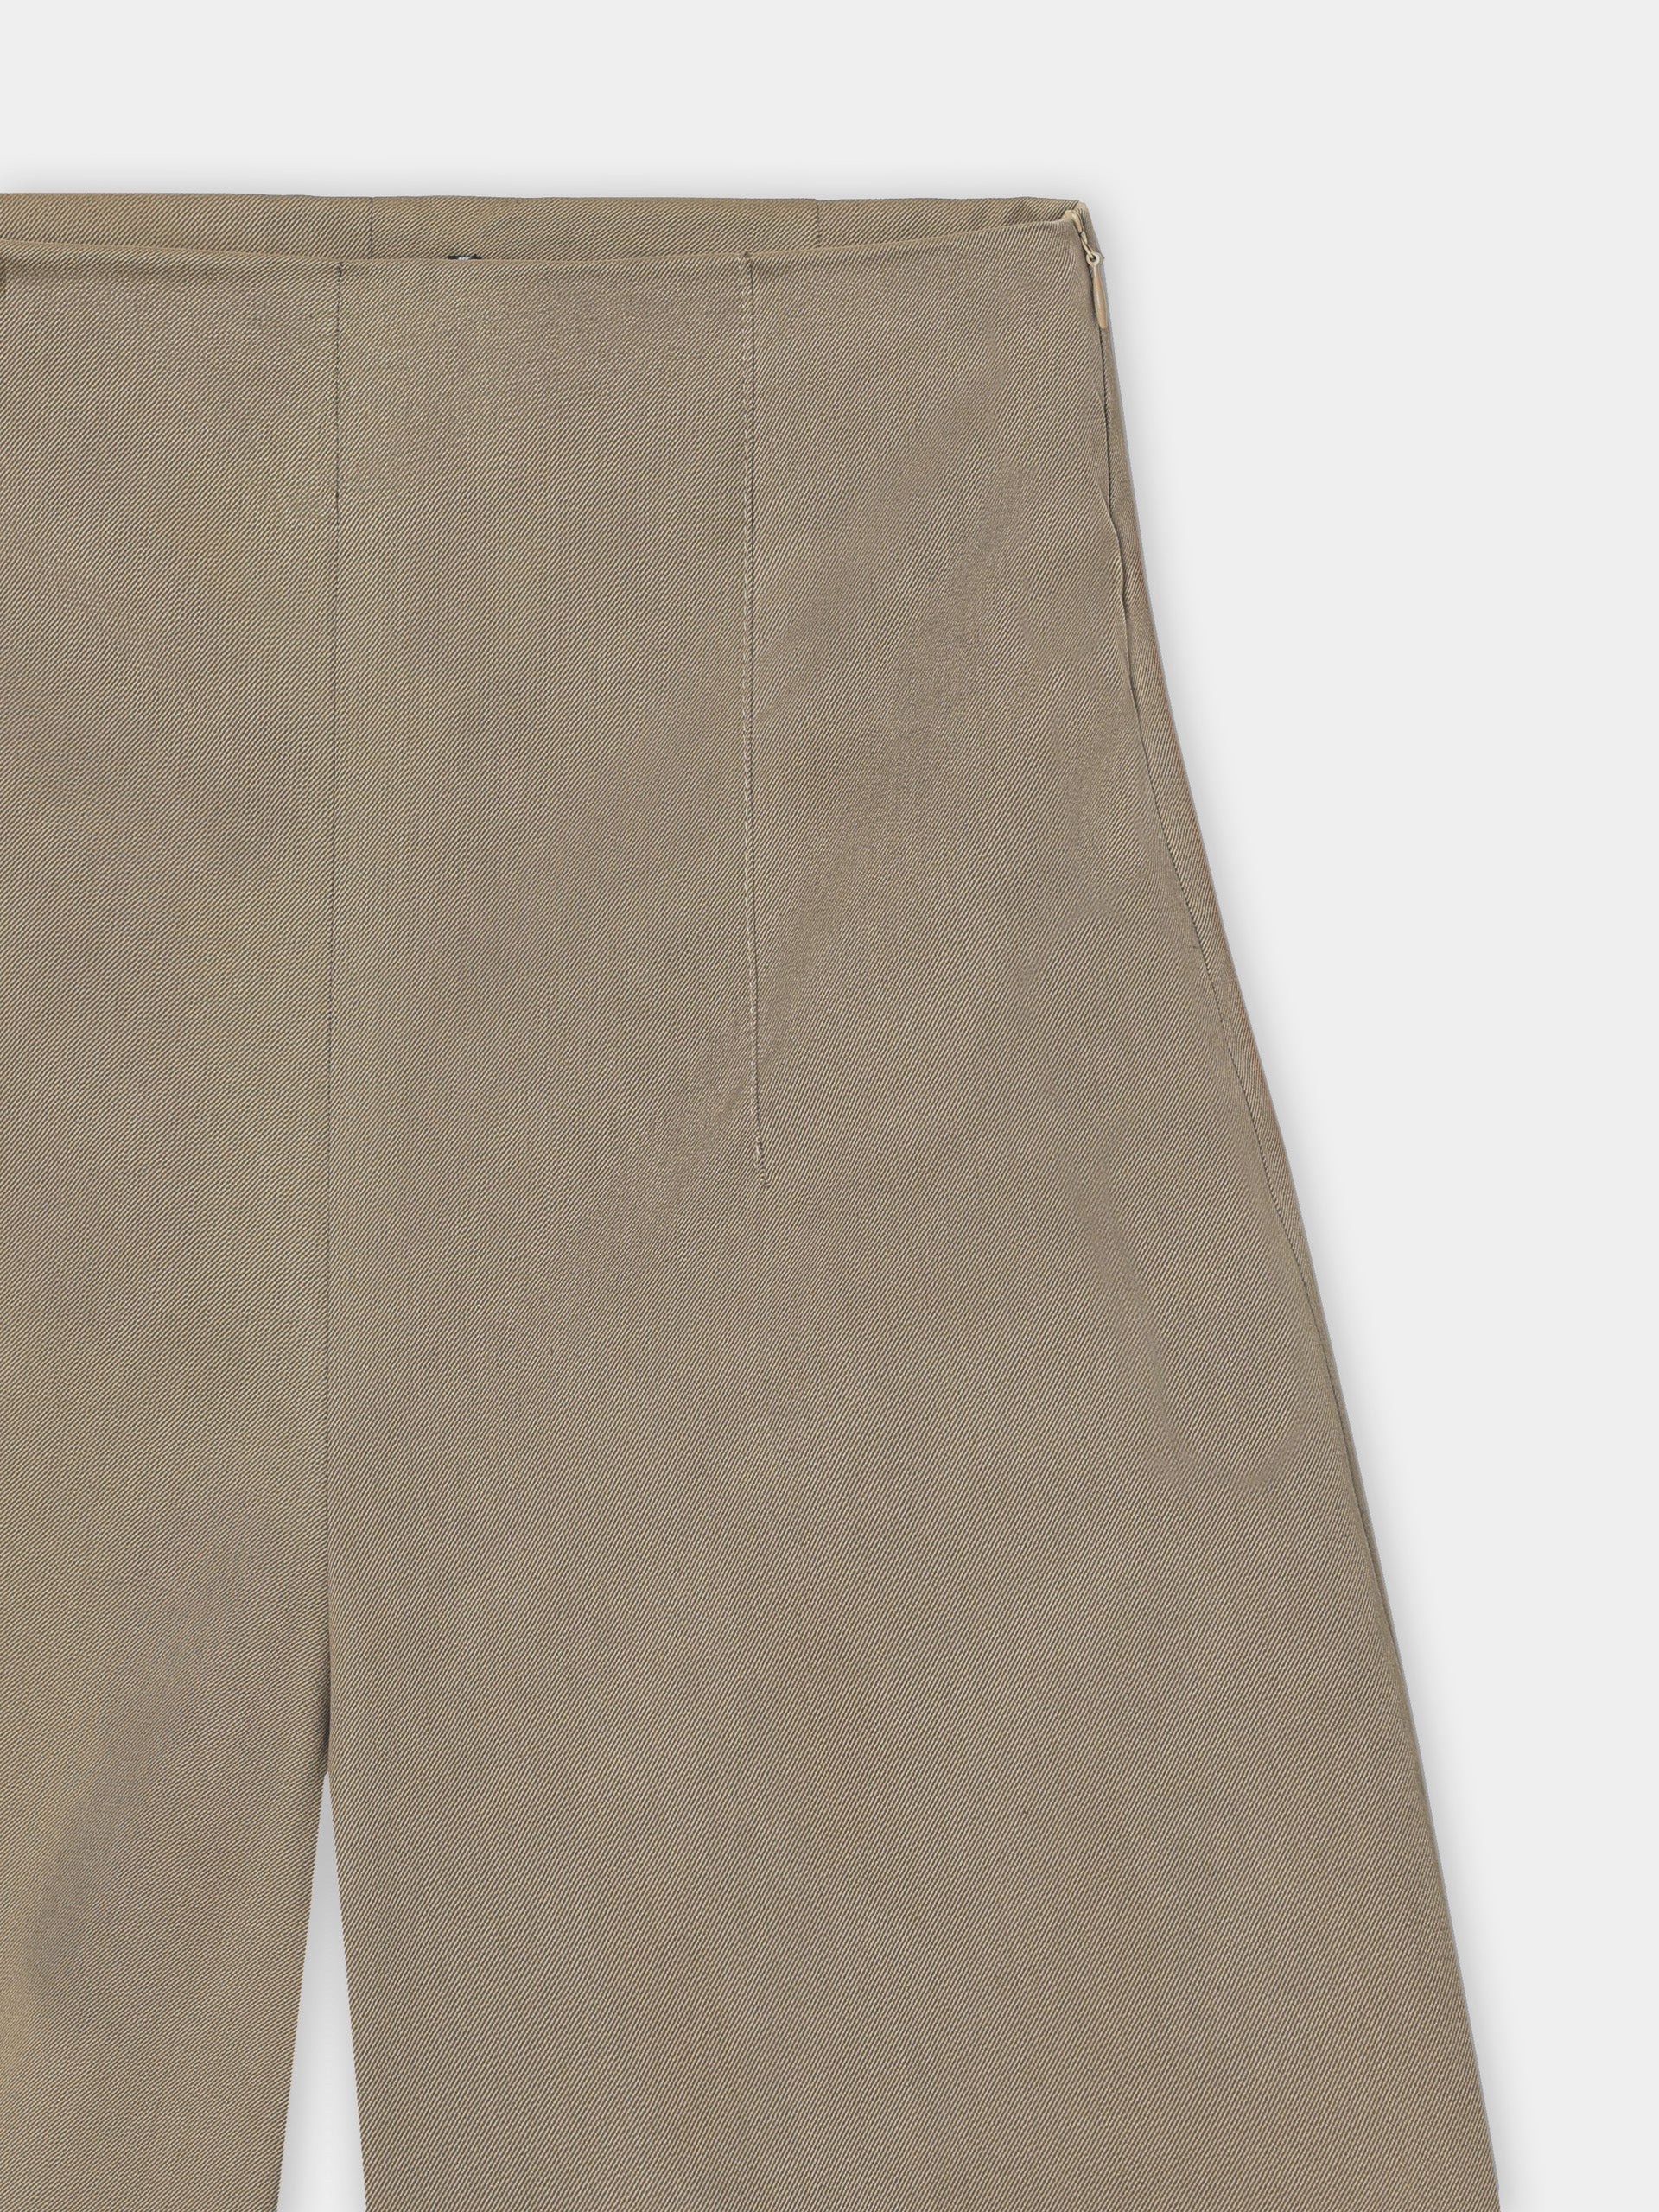 Women's unique wide beige pants